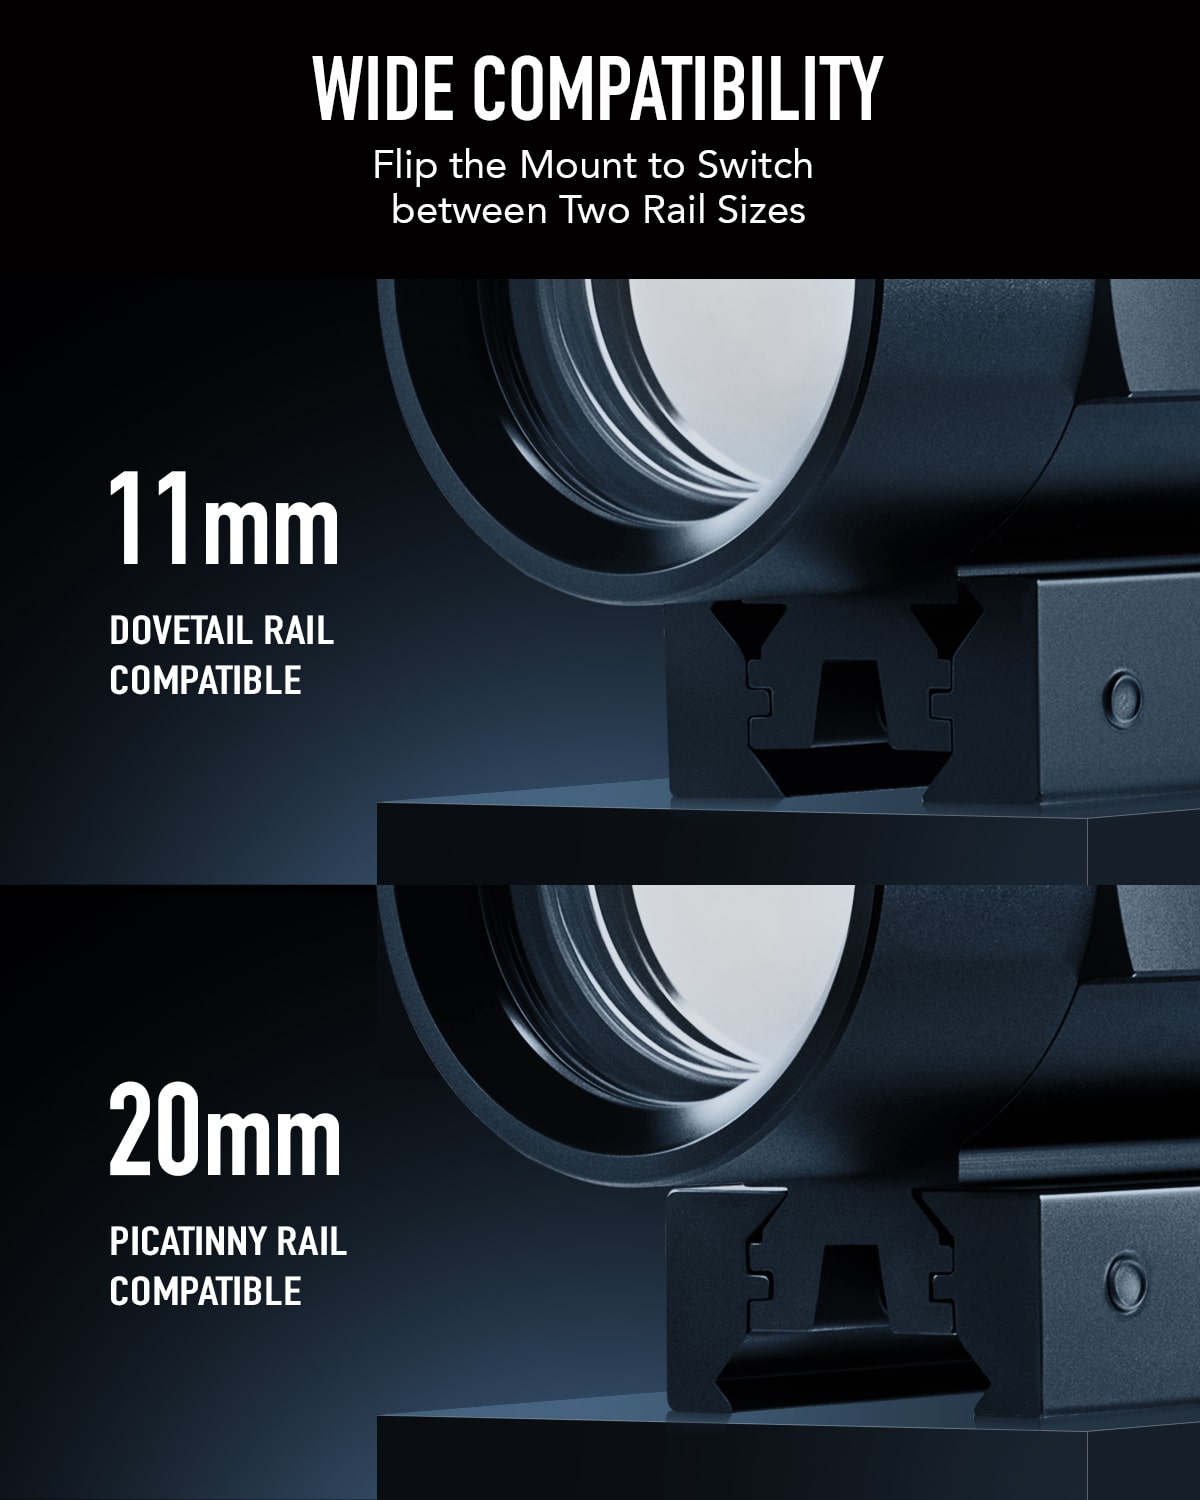 1x40mm Reflex Red Green Dot Sight Riflescope 